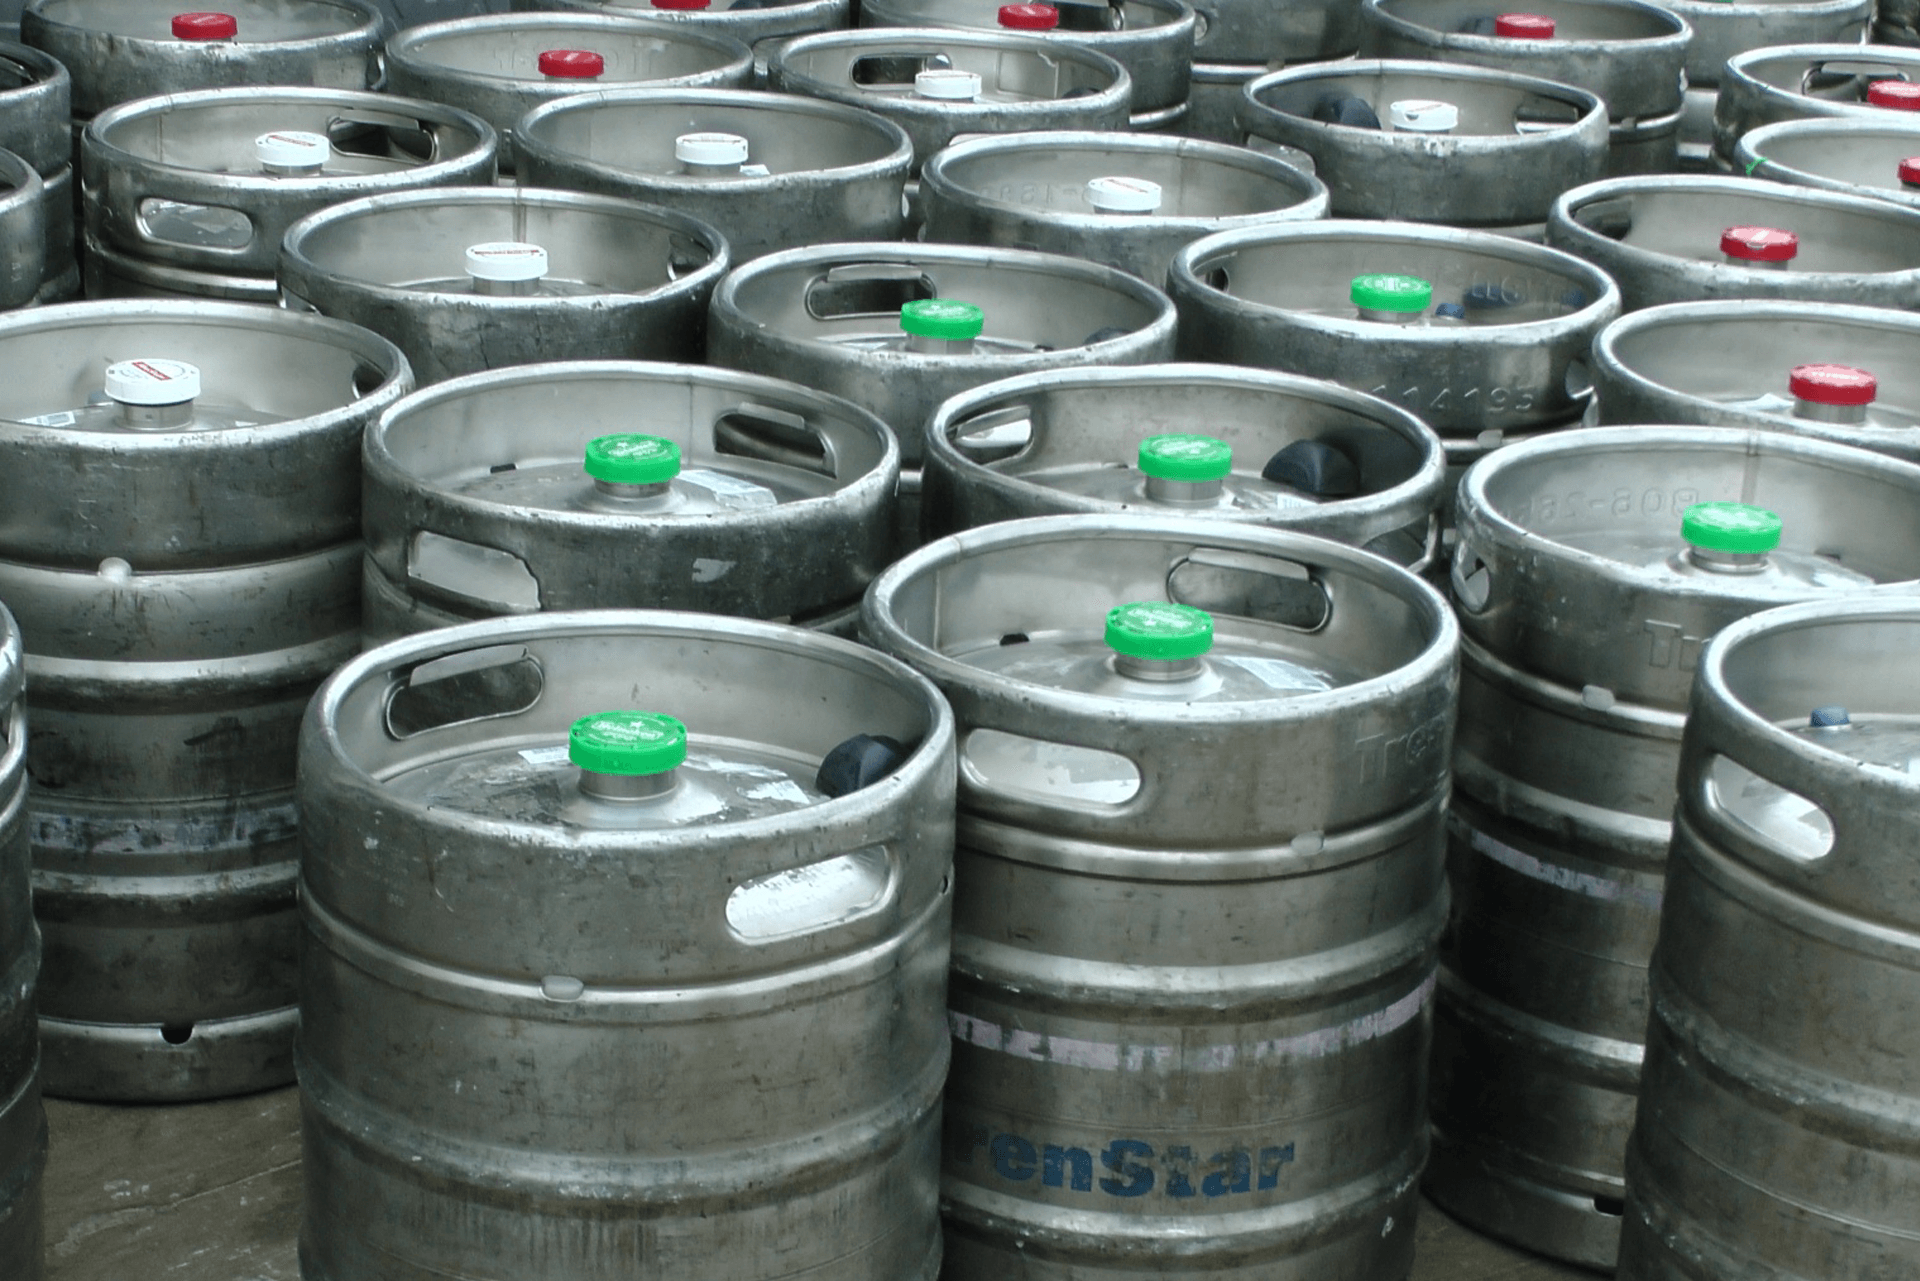 Beer kegs stock